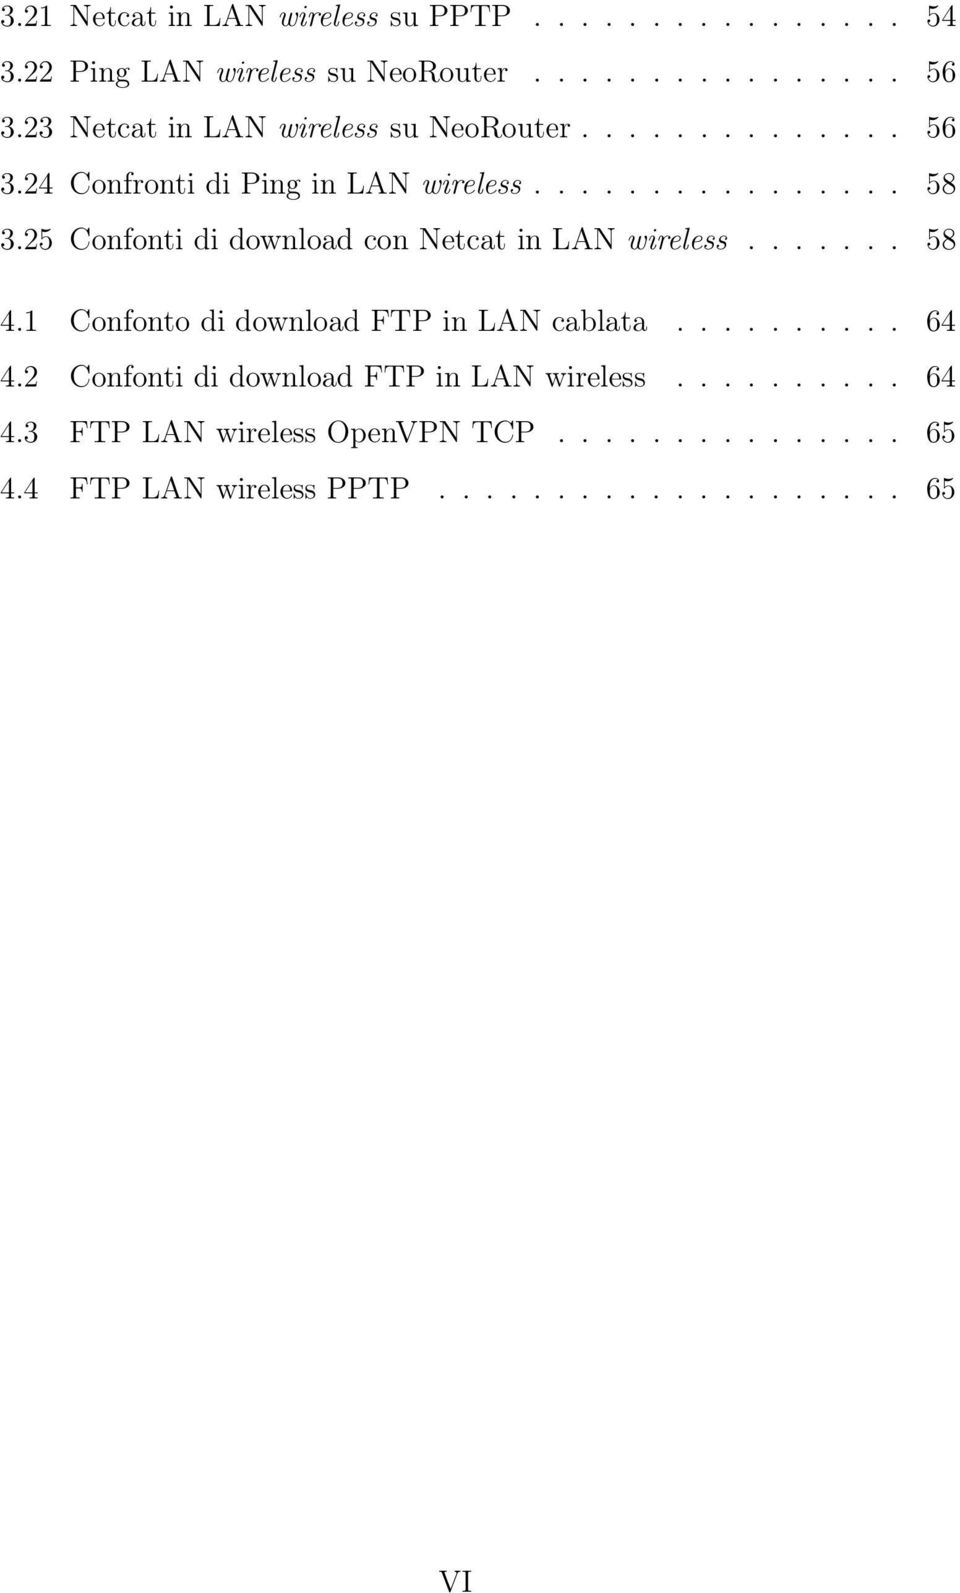 25 Confonti di download con Netcat in LAN wireless... 58 4.1 Confonto di download FTP in LAN cablata.......... 64 4.